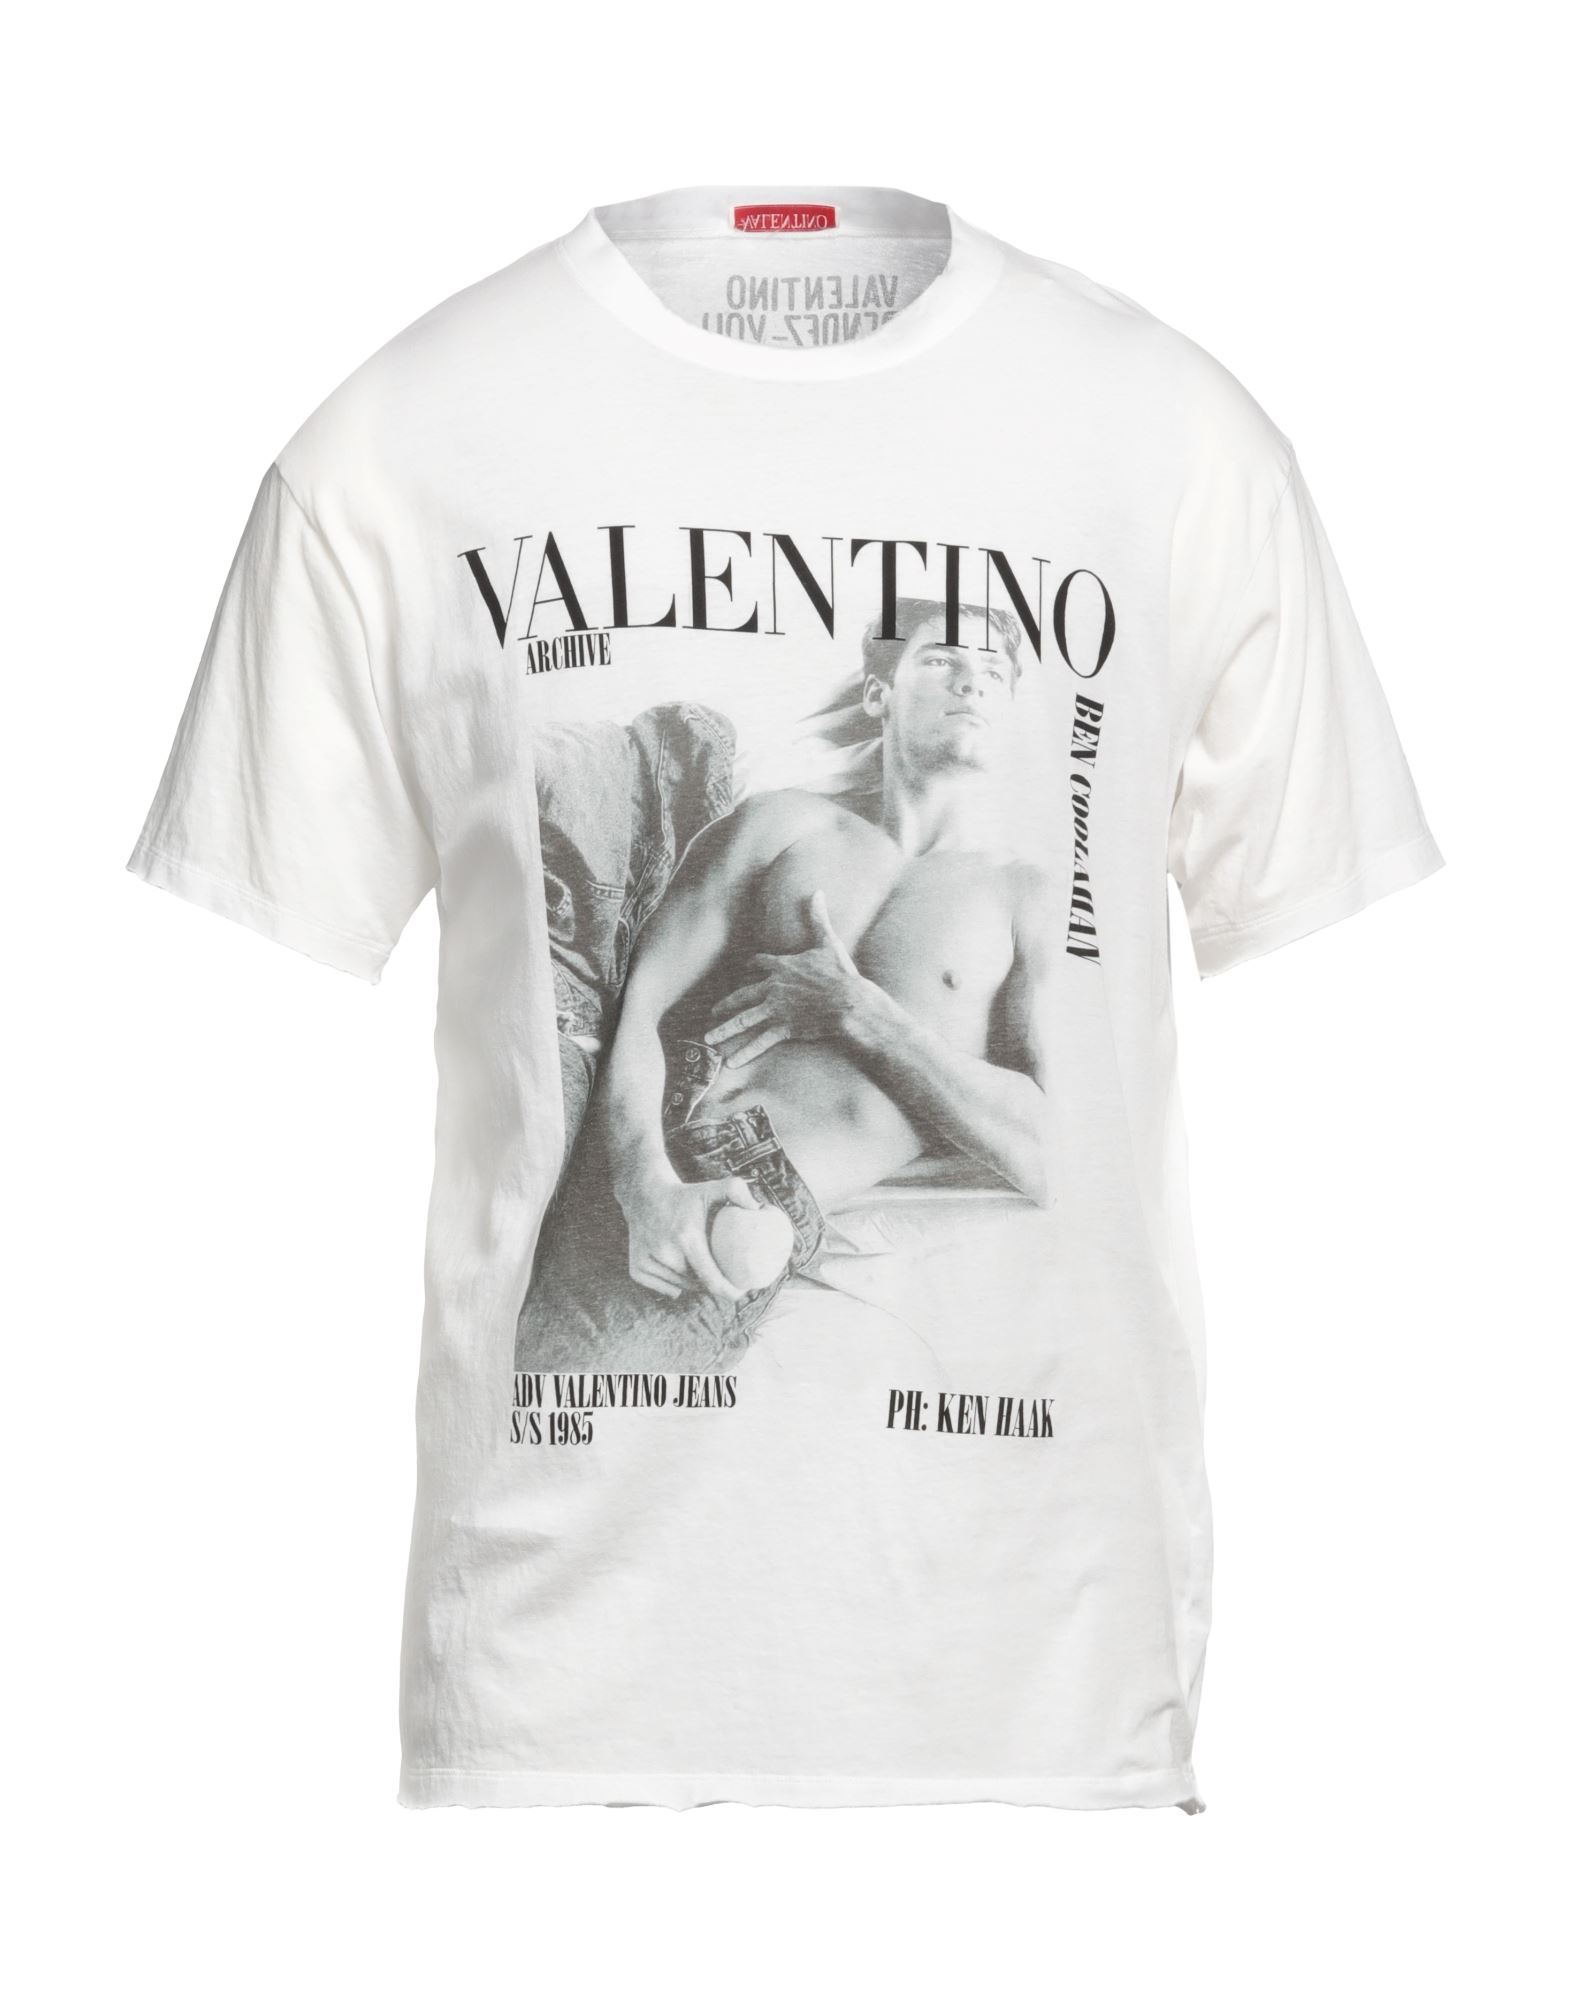 VALENTINO ヴァレンティノ アイボリーホワイト シルク ワンピース 半袖-